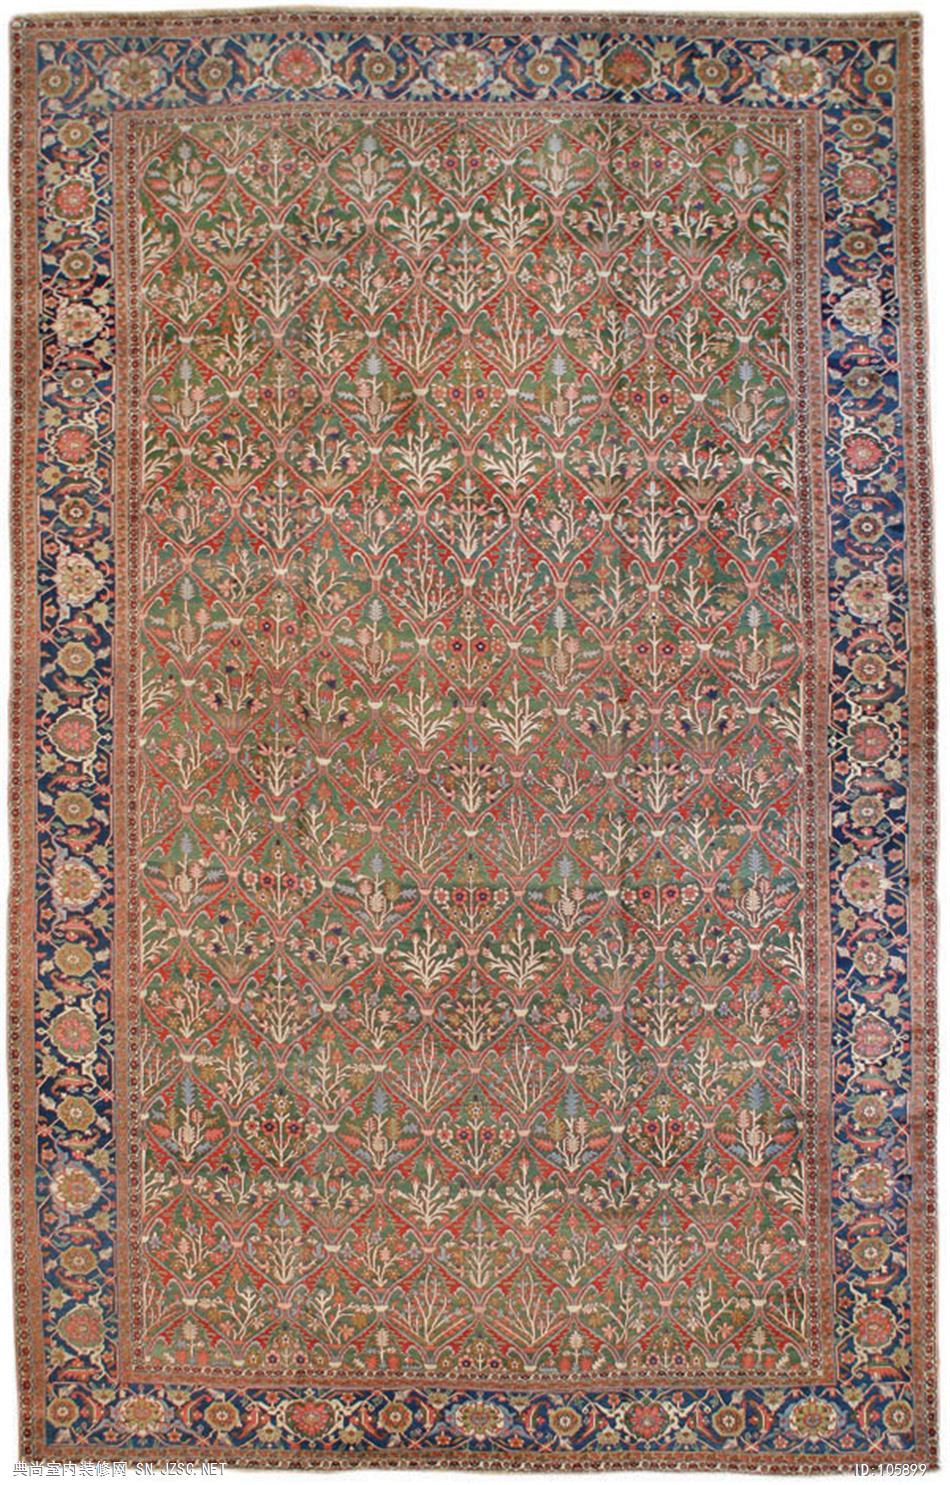 欧式风格地毯 (374)